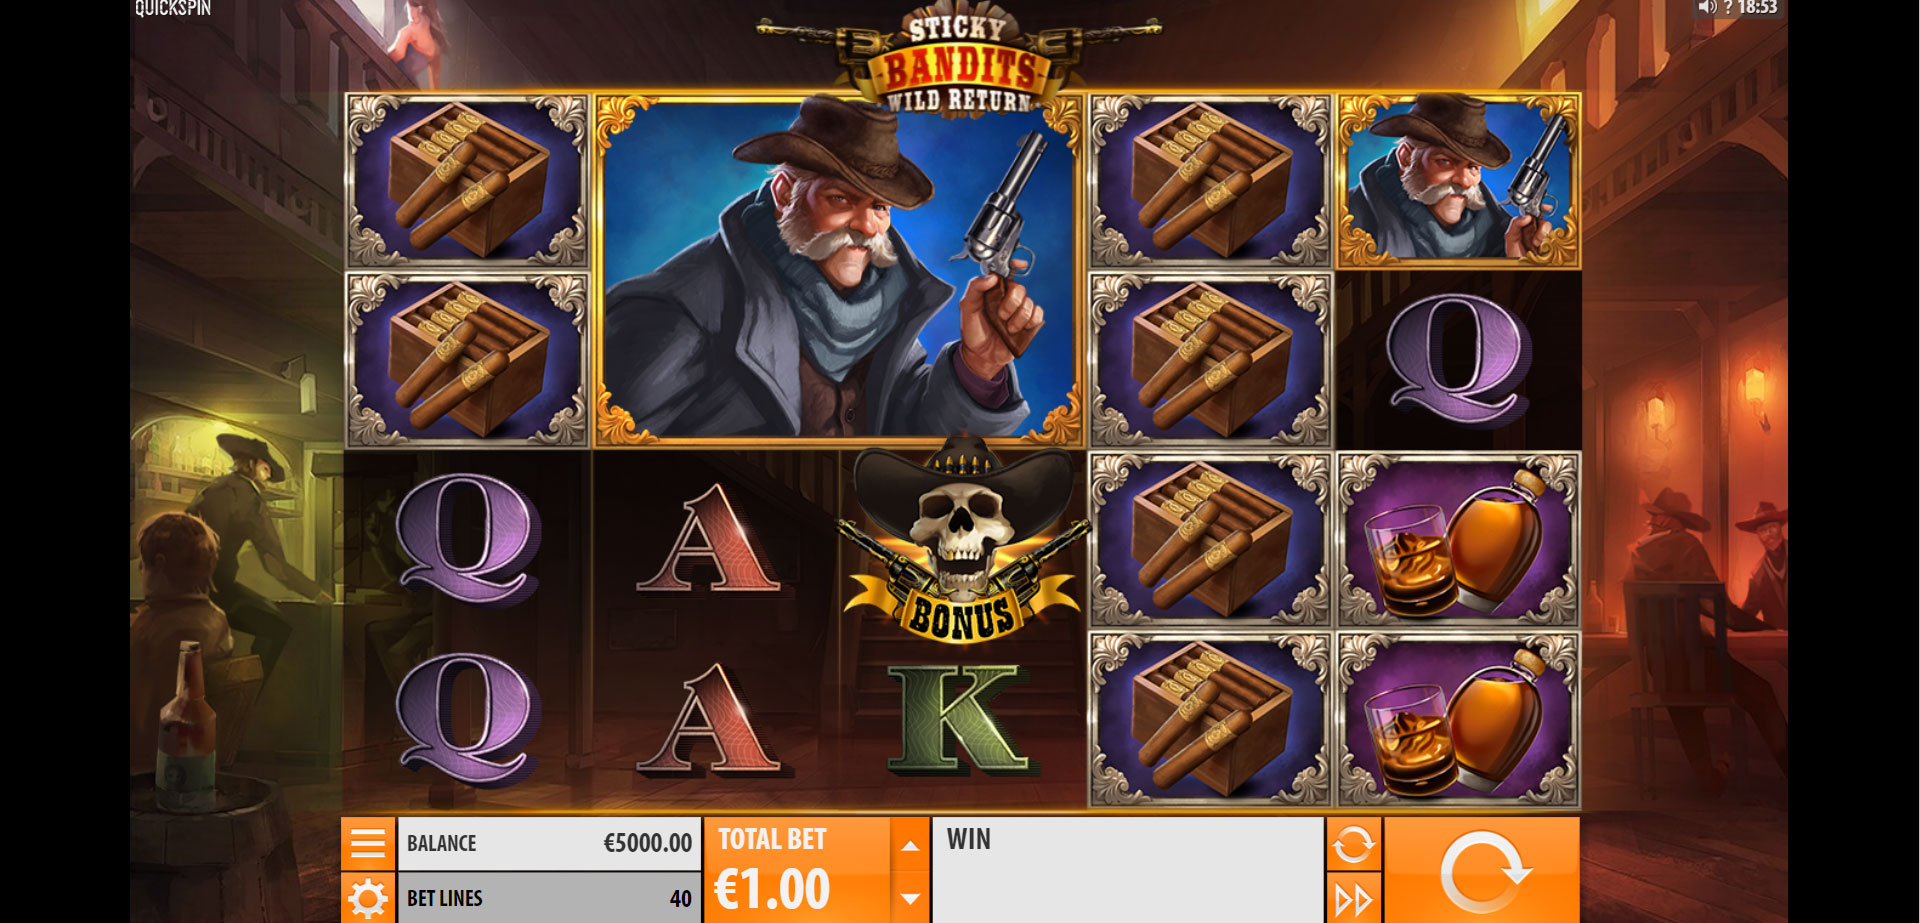 griglia del gioco slot online sticky bandits wild return